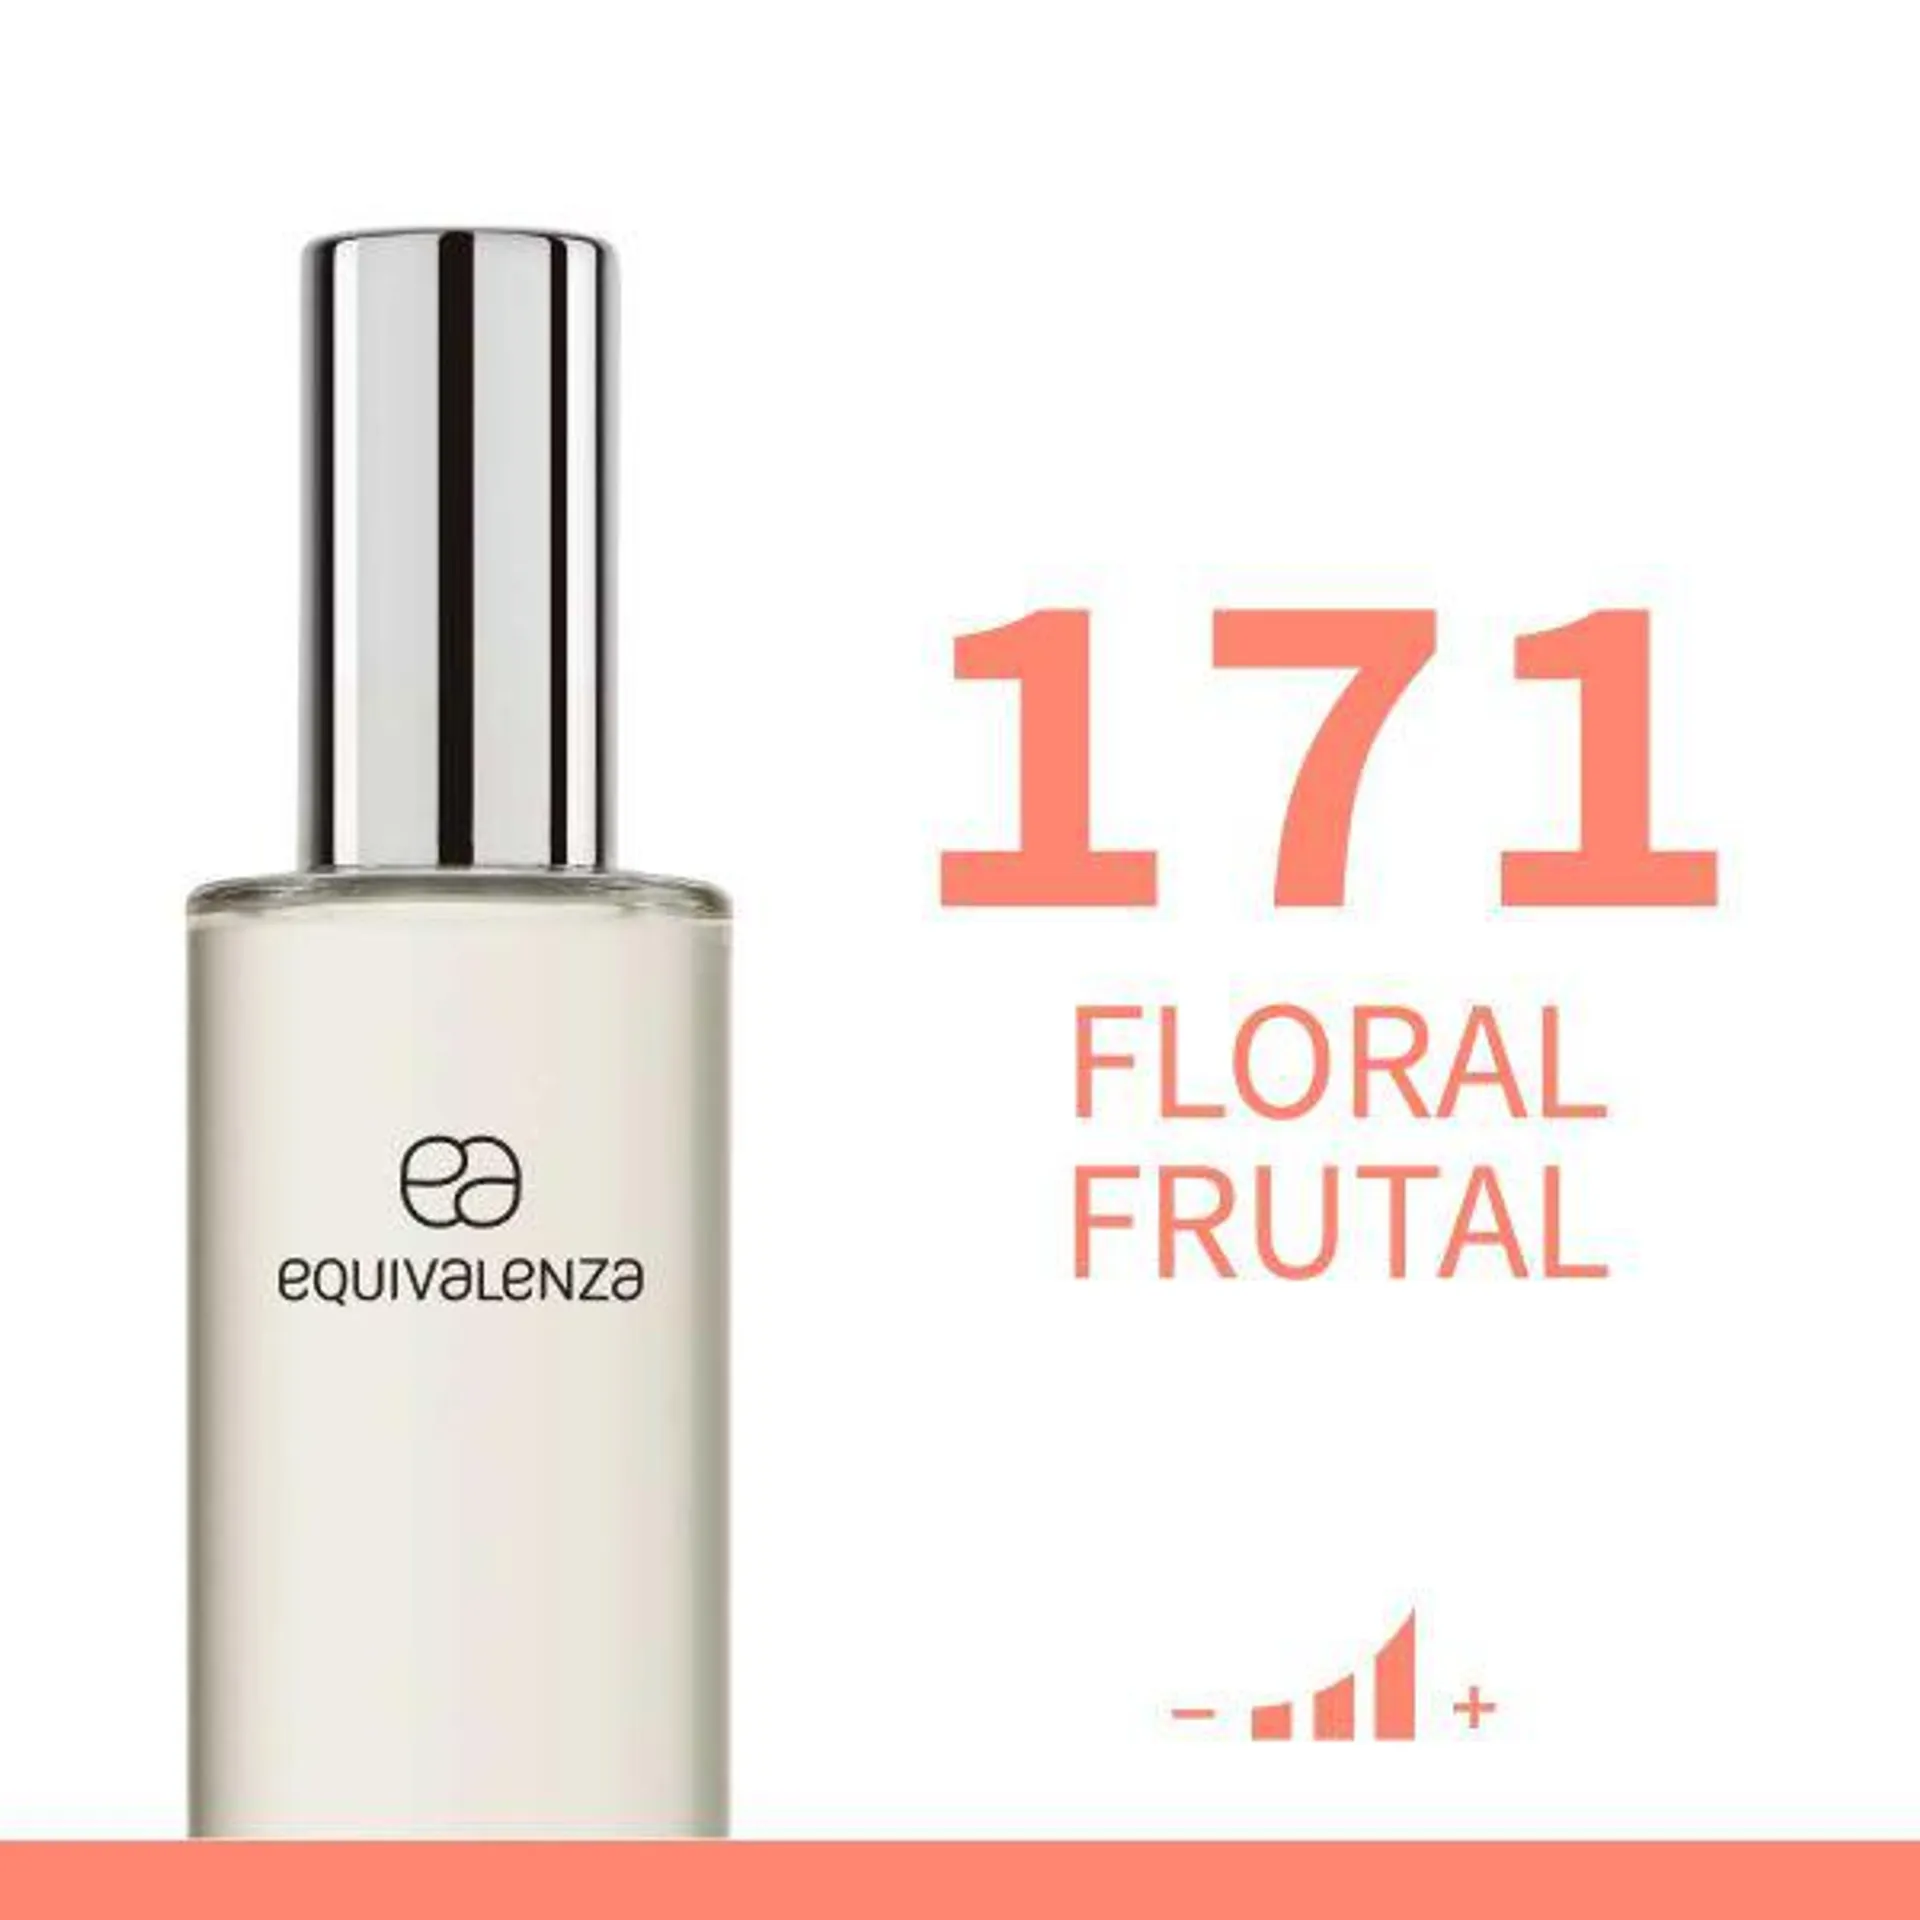 Floral Frutal 171